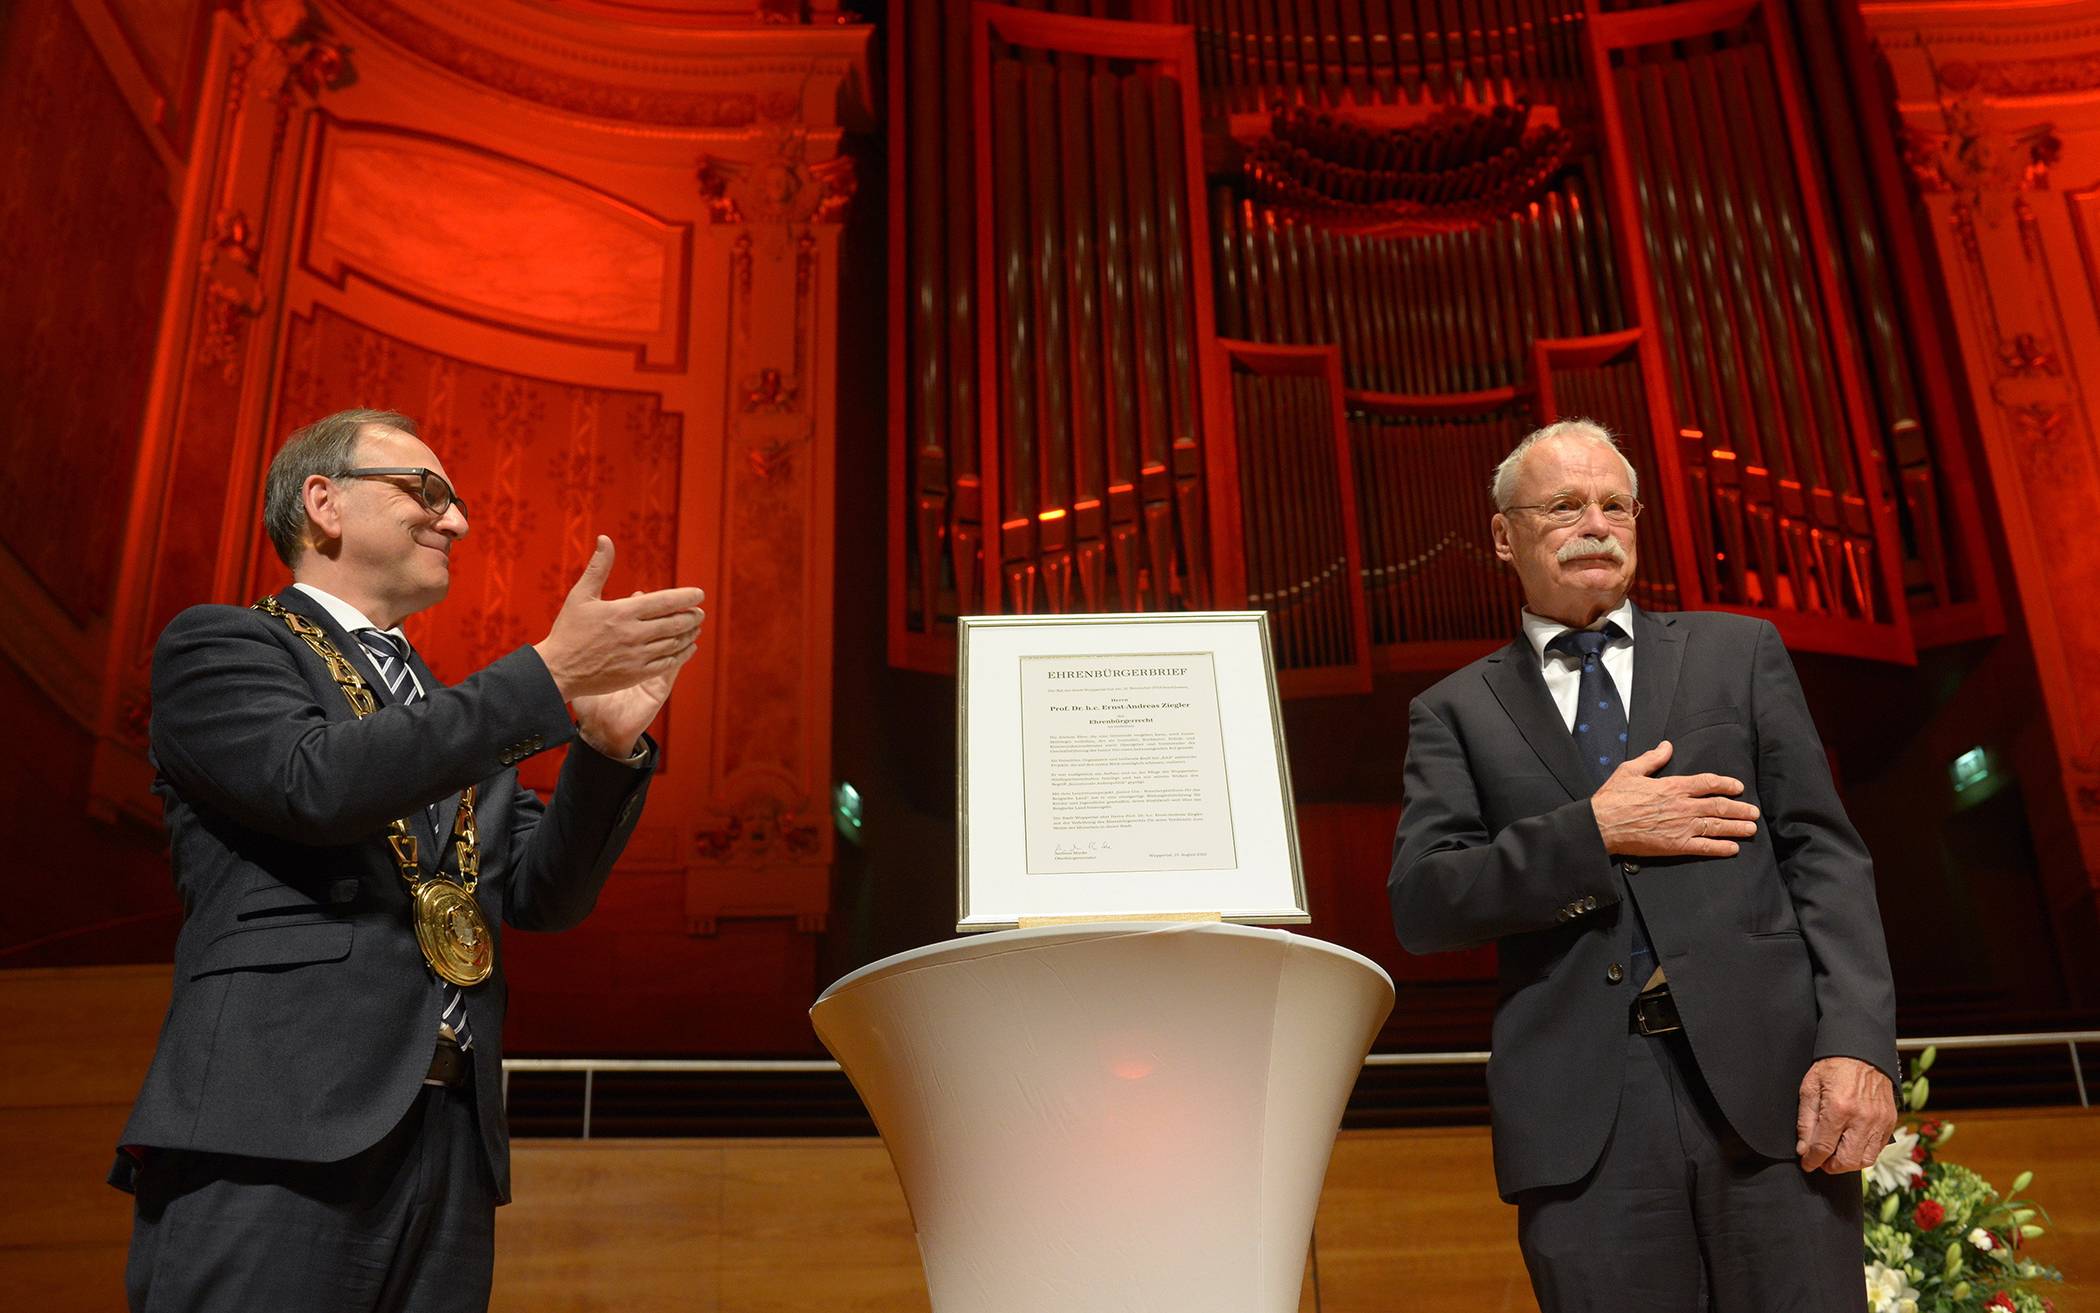  Oberbürgermeister Andreas Mucke (li.) mit dem neuen Ehrenbürger Ernst-Andreas Ziegler in der Historischen Stadthalle. 